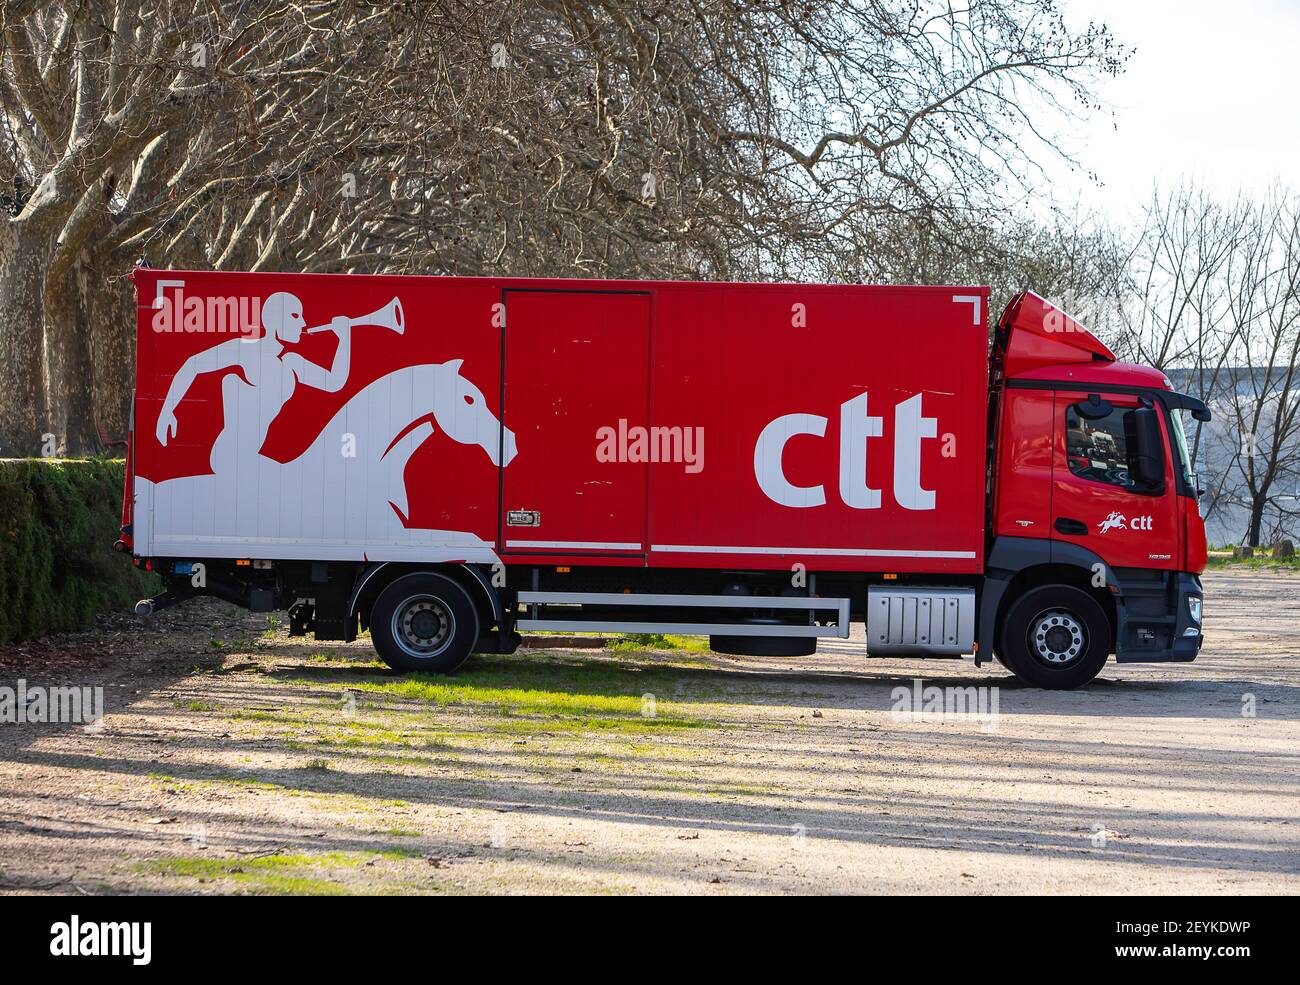 Ponte de Lima, Portugal - 06 février 2020: CTT courrier camion rouge garée, CTT est un courrier portugais Banque D'Images